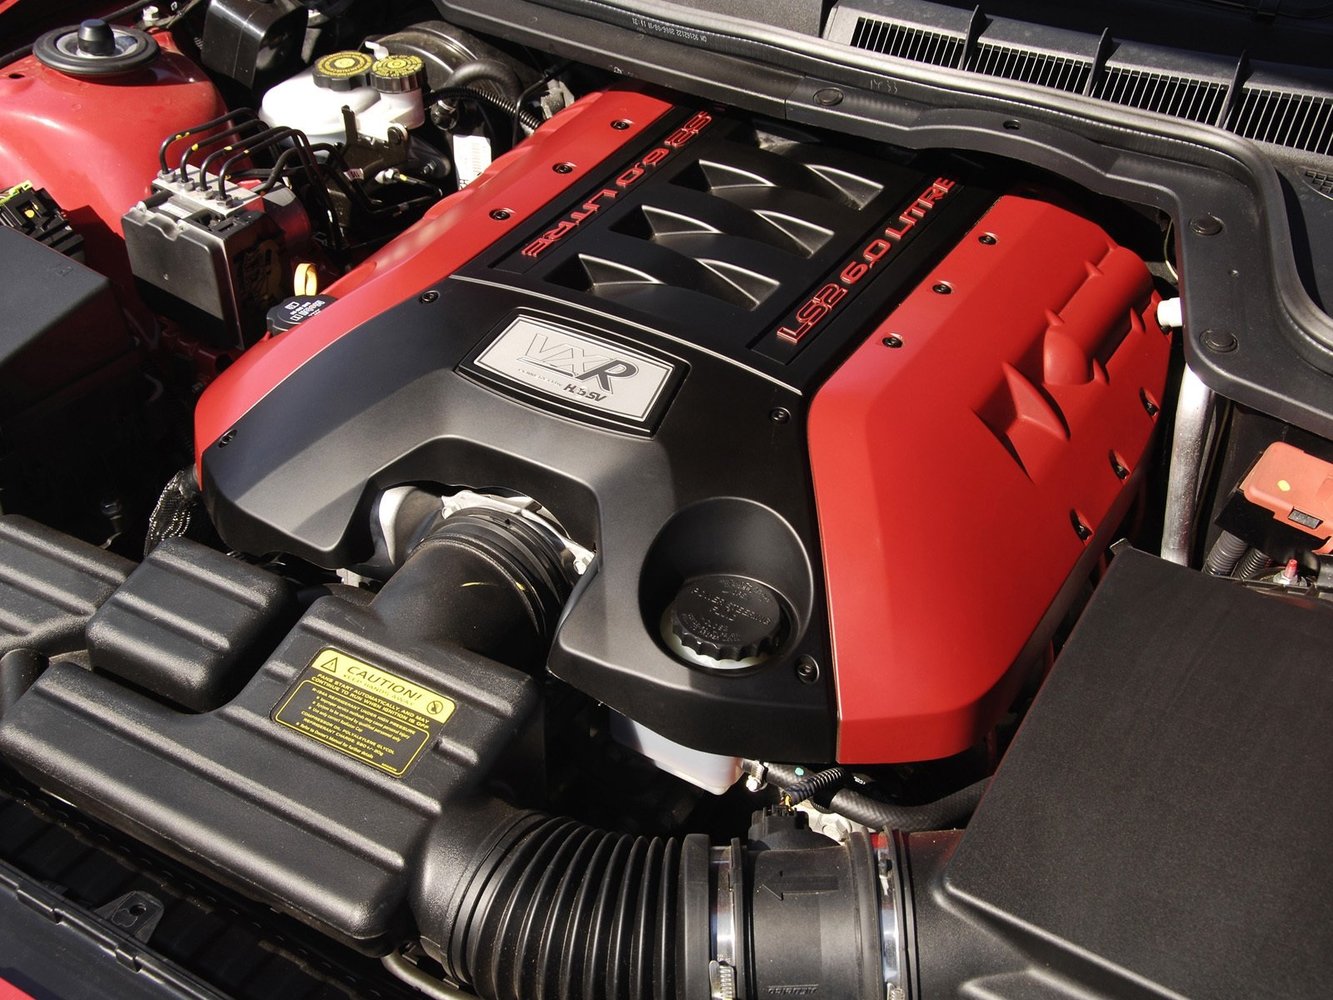 седан Vauxhall VXR8 2007 - 2009г выпуска модификация 6.2 AT (431 л.с.)